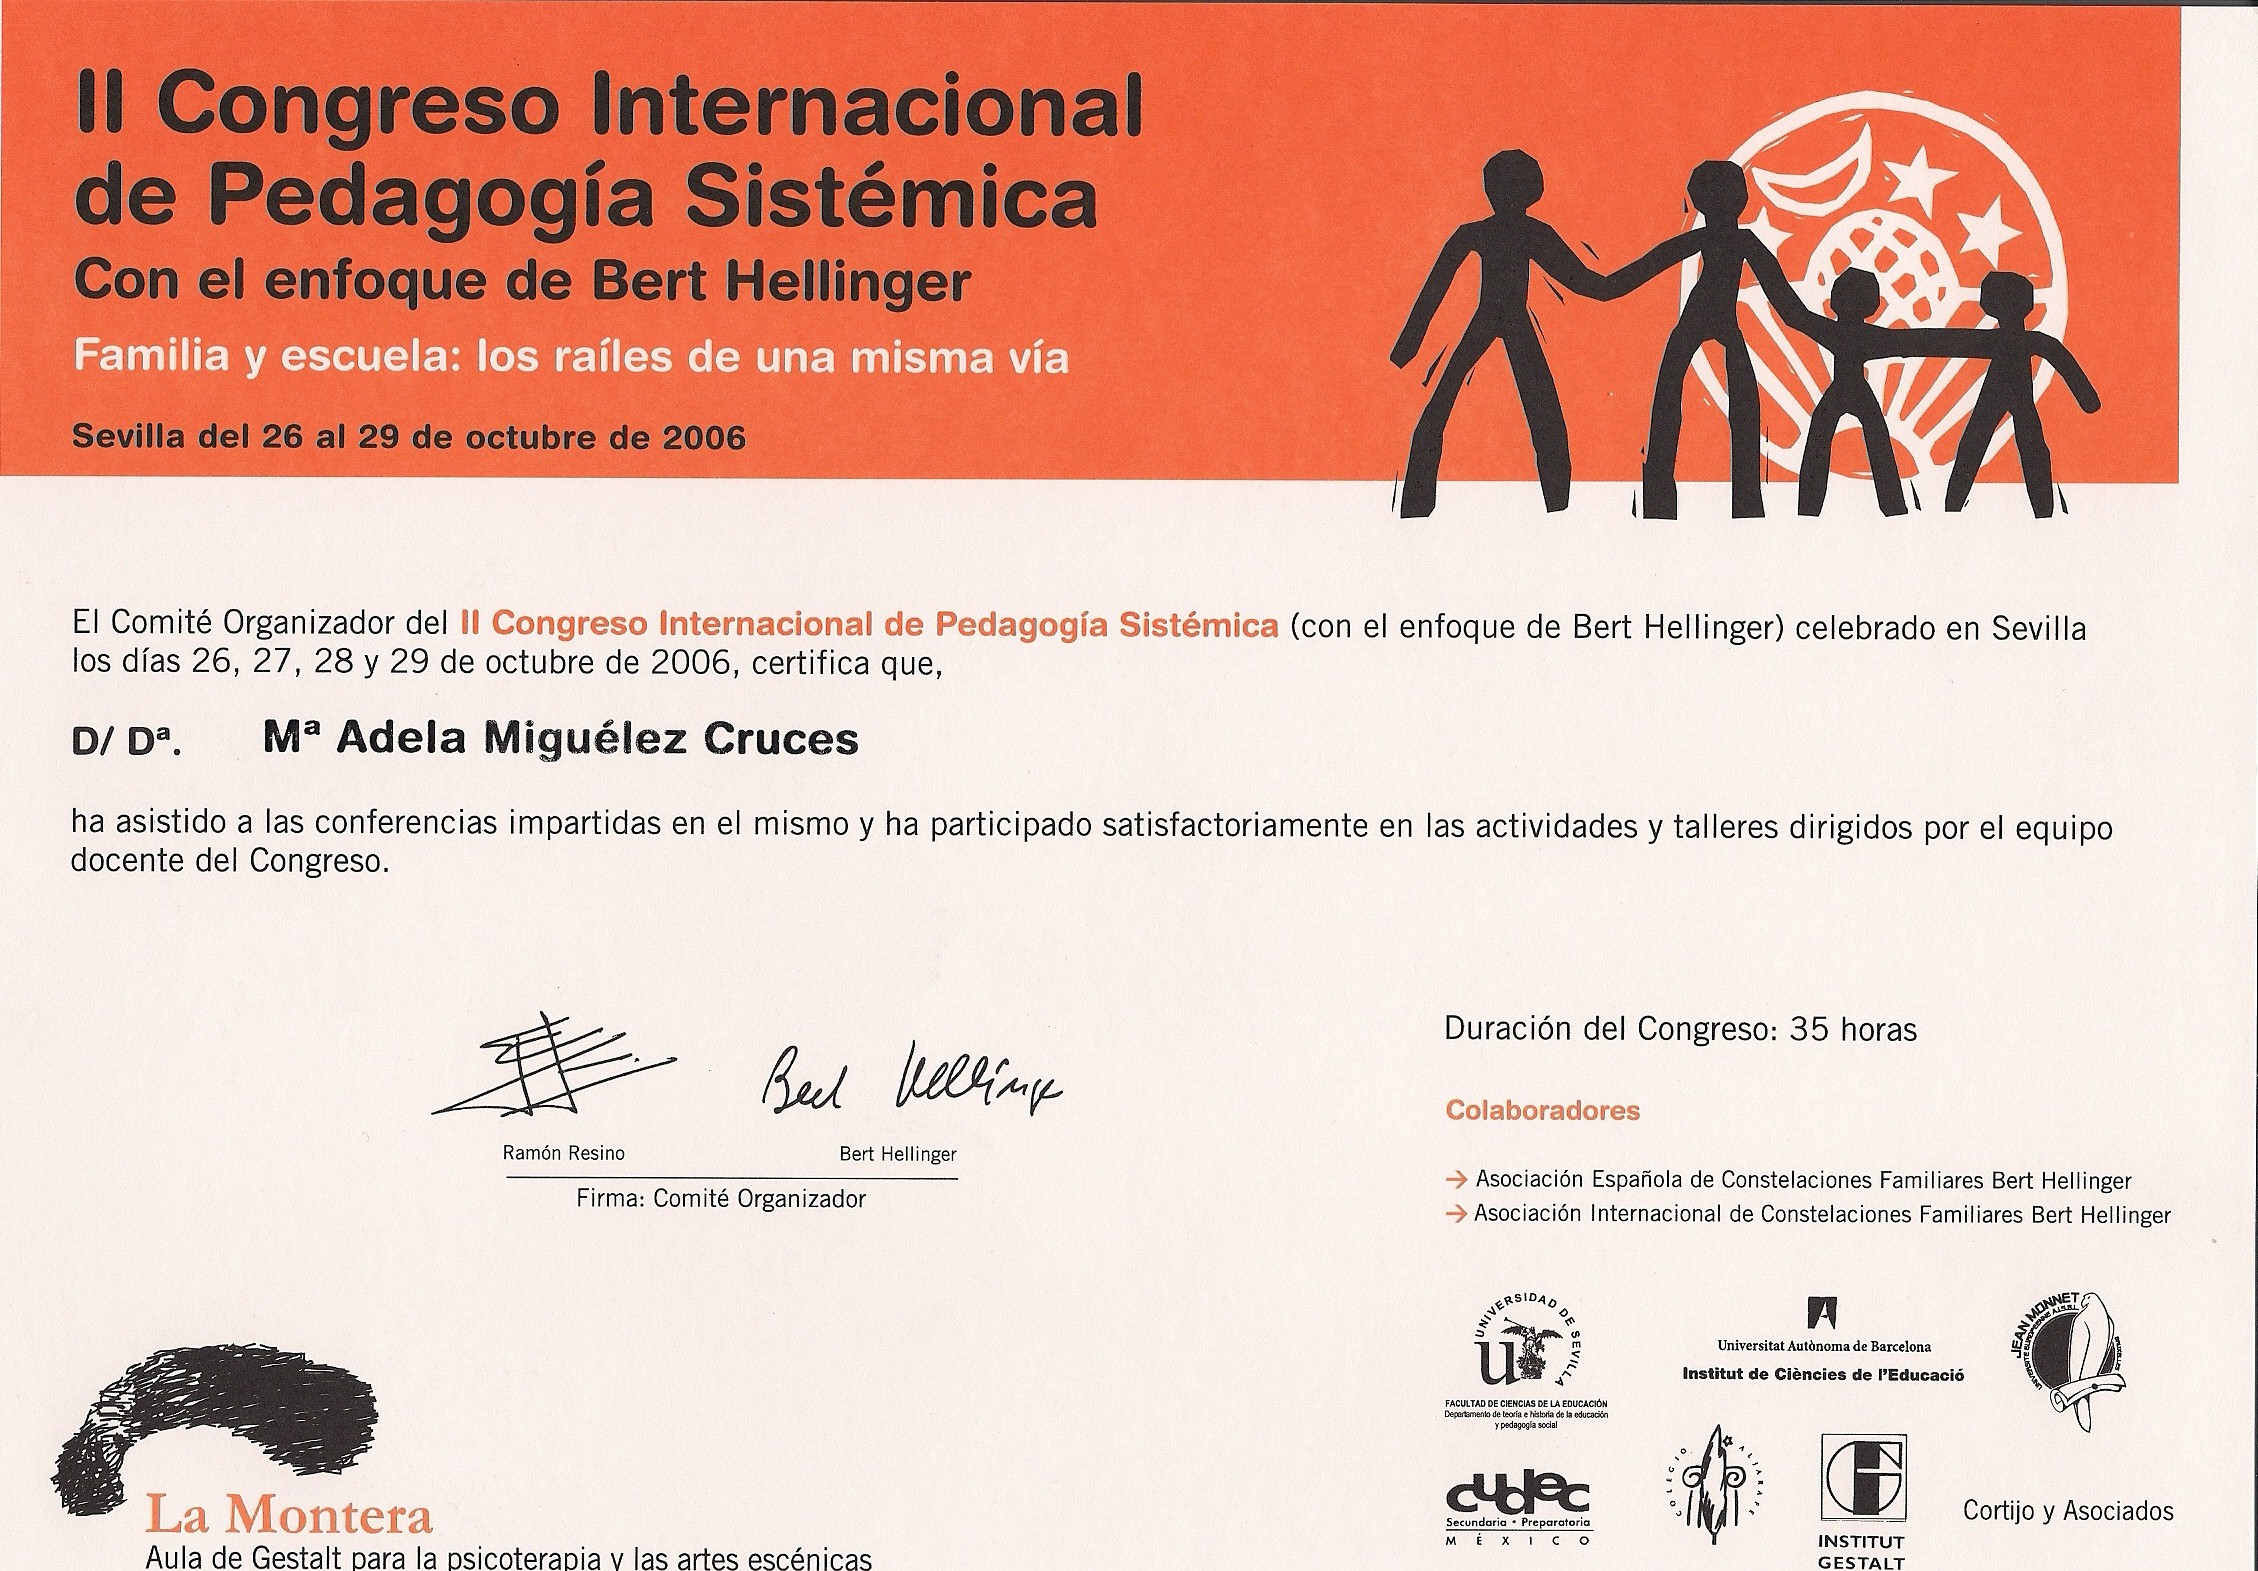 II Congreso Internacional de Pedagogía Sistémica